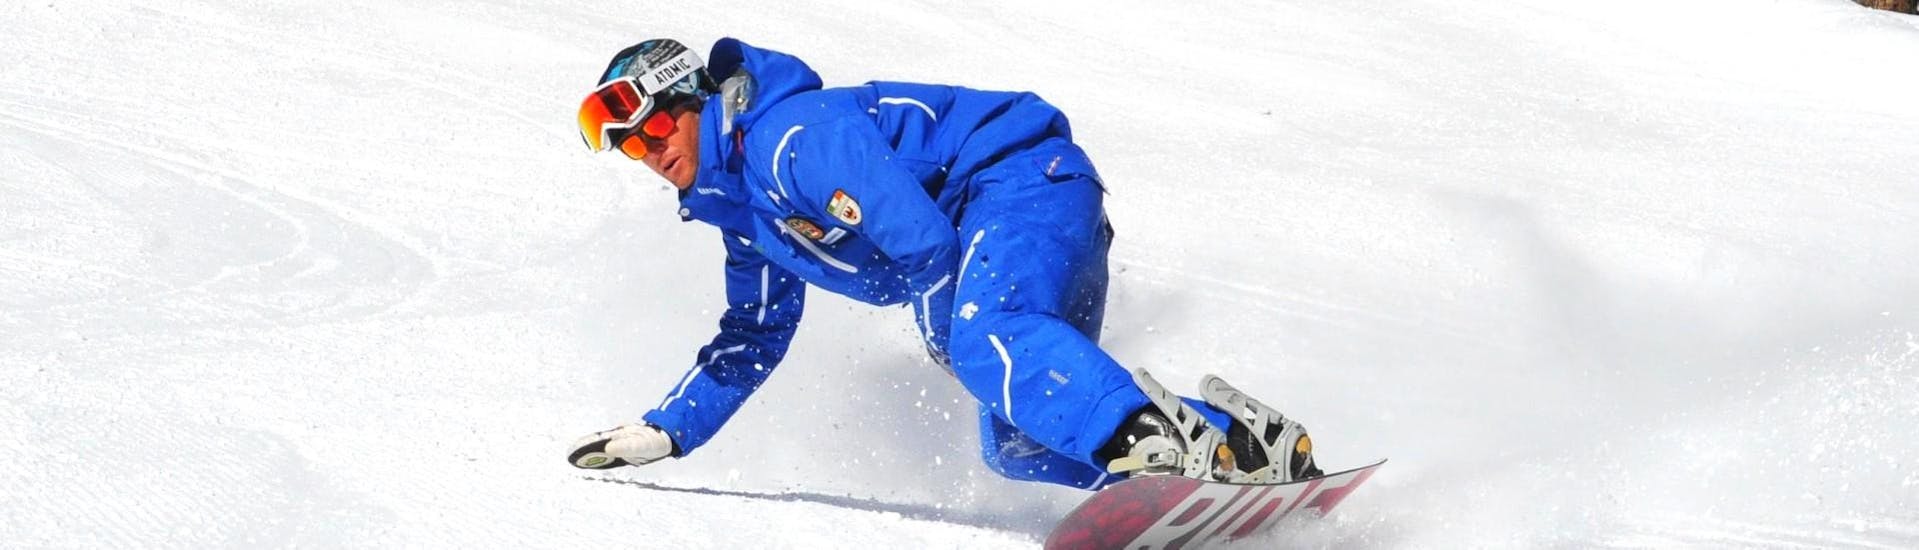 Snowboardkurs für Kinder & Erwachsene - Alle Levels der Skischule Folgarida Dimaro Ski School finden statt, der Snowboardlehrer zeigt die Technik auf den Pisten des Val di Sole.